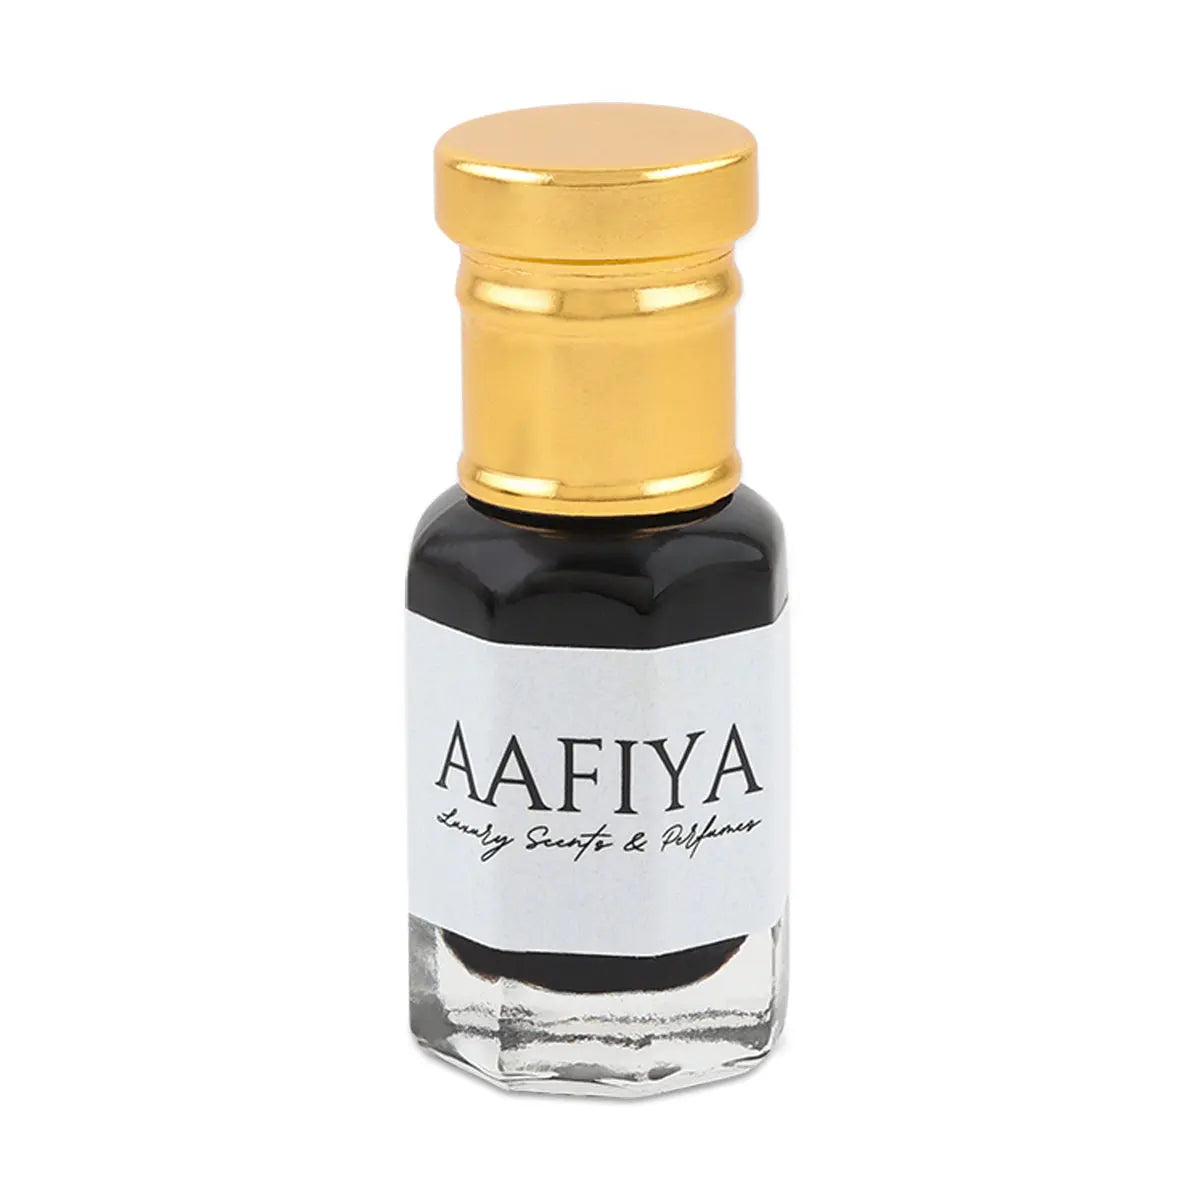 Shaam e majmua Aafiya Luxury Scents & Perfumes